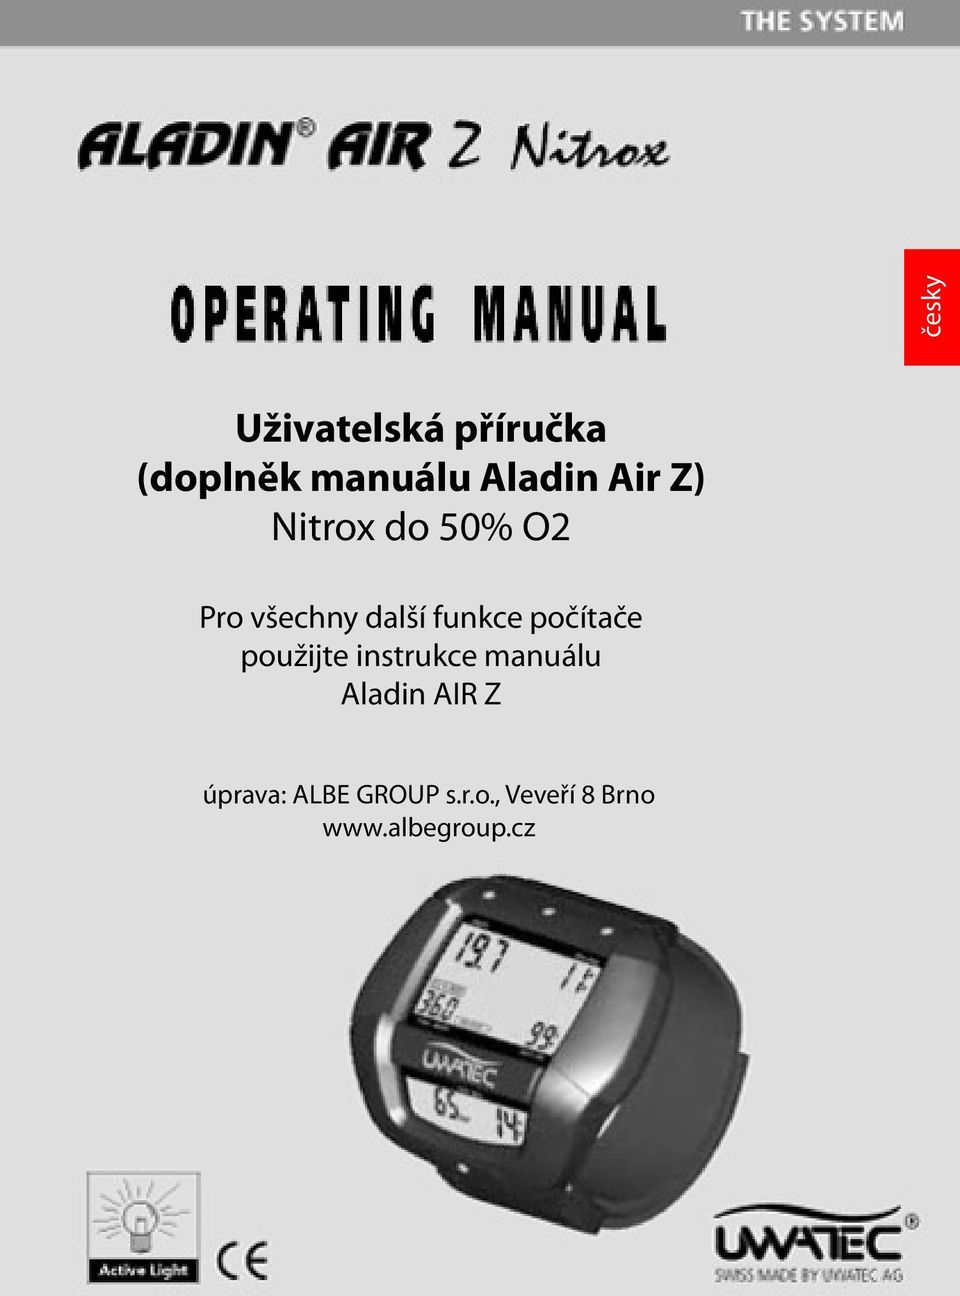 počítače použijte instrukce manuálu Aladin AIR Z